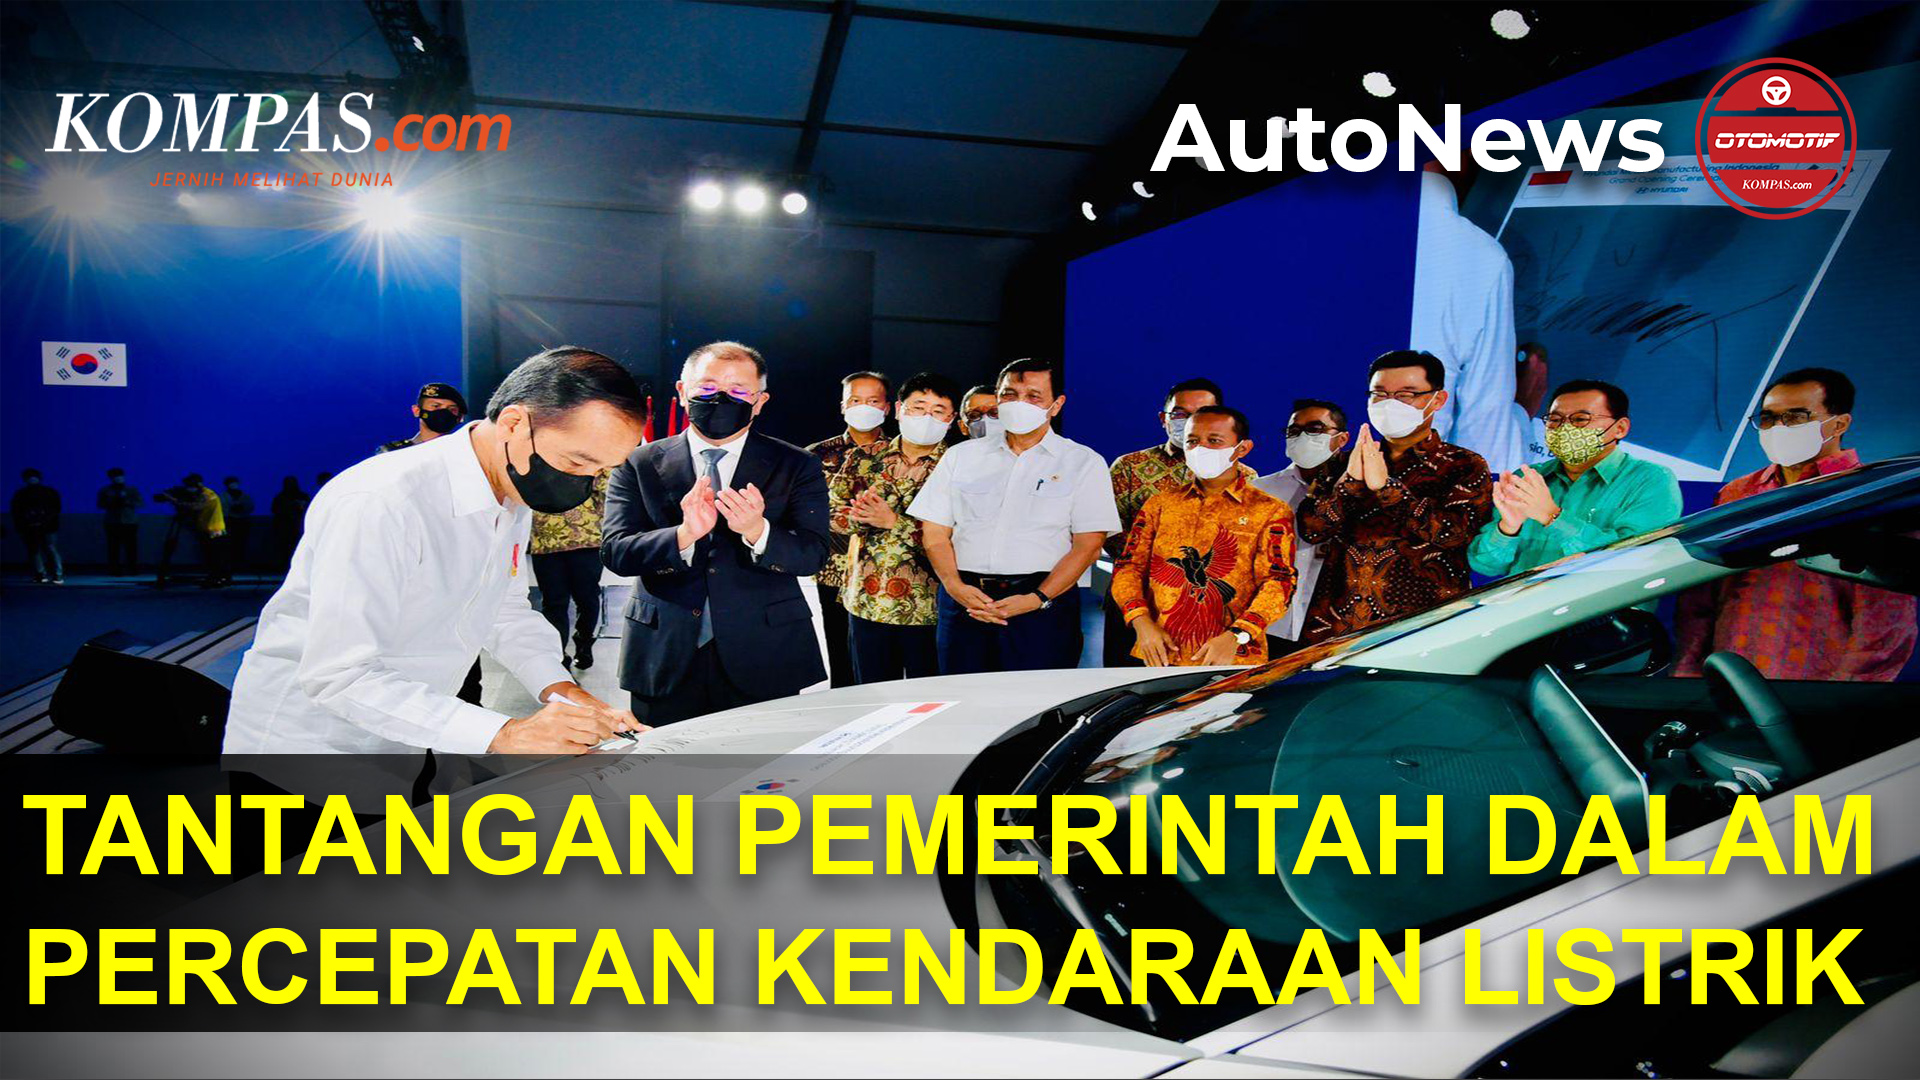 Tantangan Pemerintah Dalam Percepatan Kendaraan Listrik di Indonesia